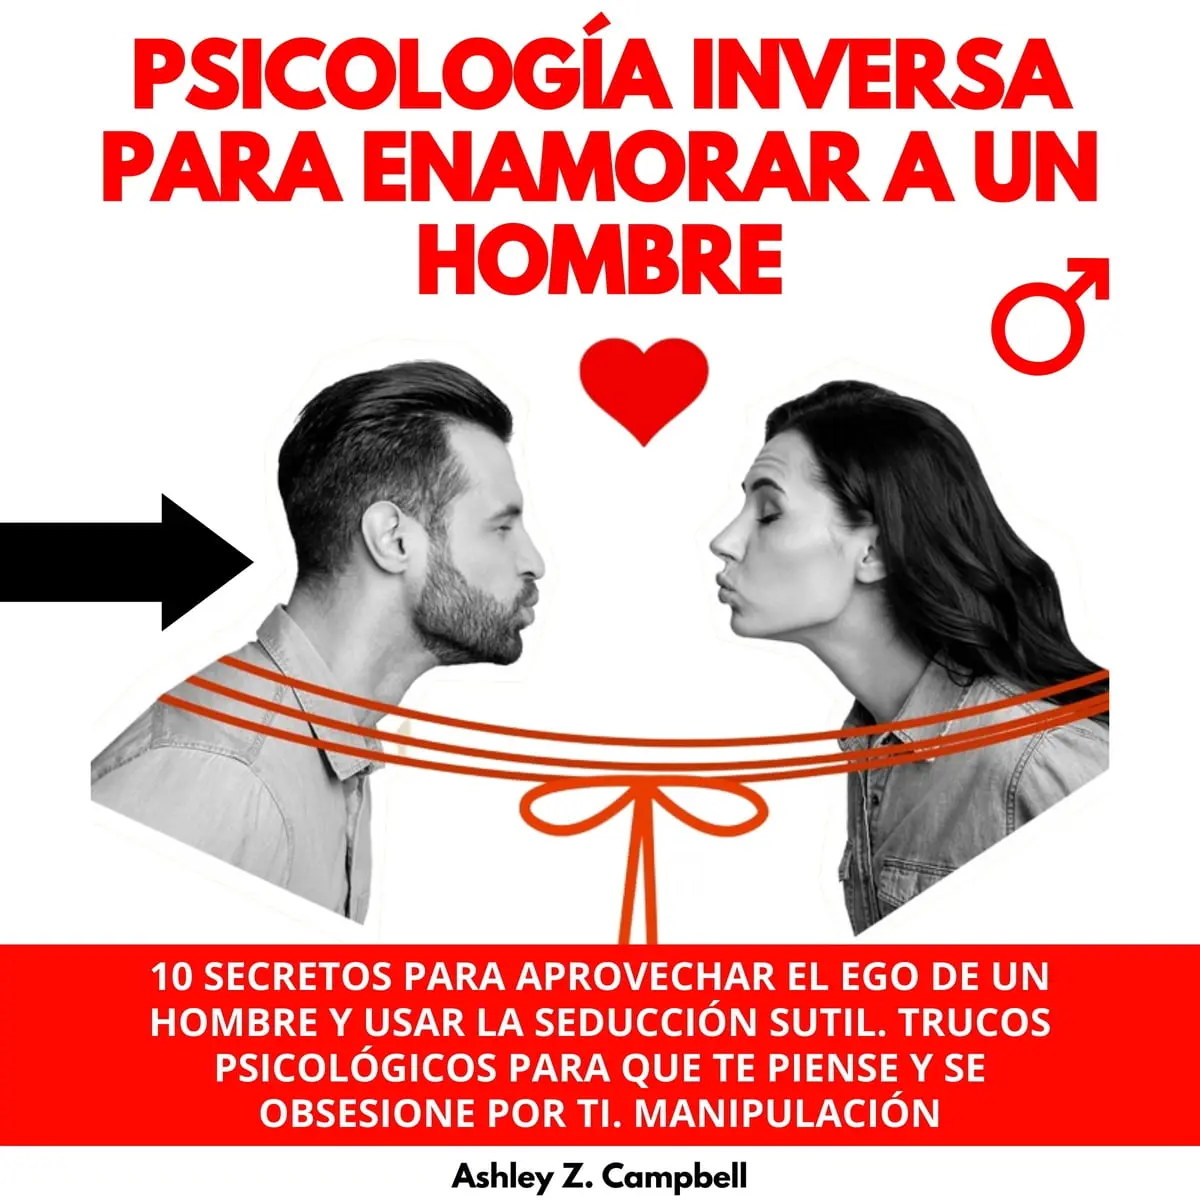 psicologia inversa para atraer a un hombre - Qué es la psicología inversa en el amor ejemplos